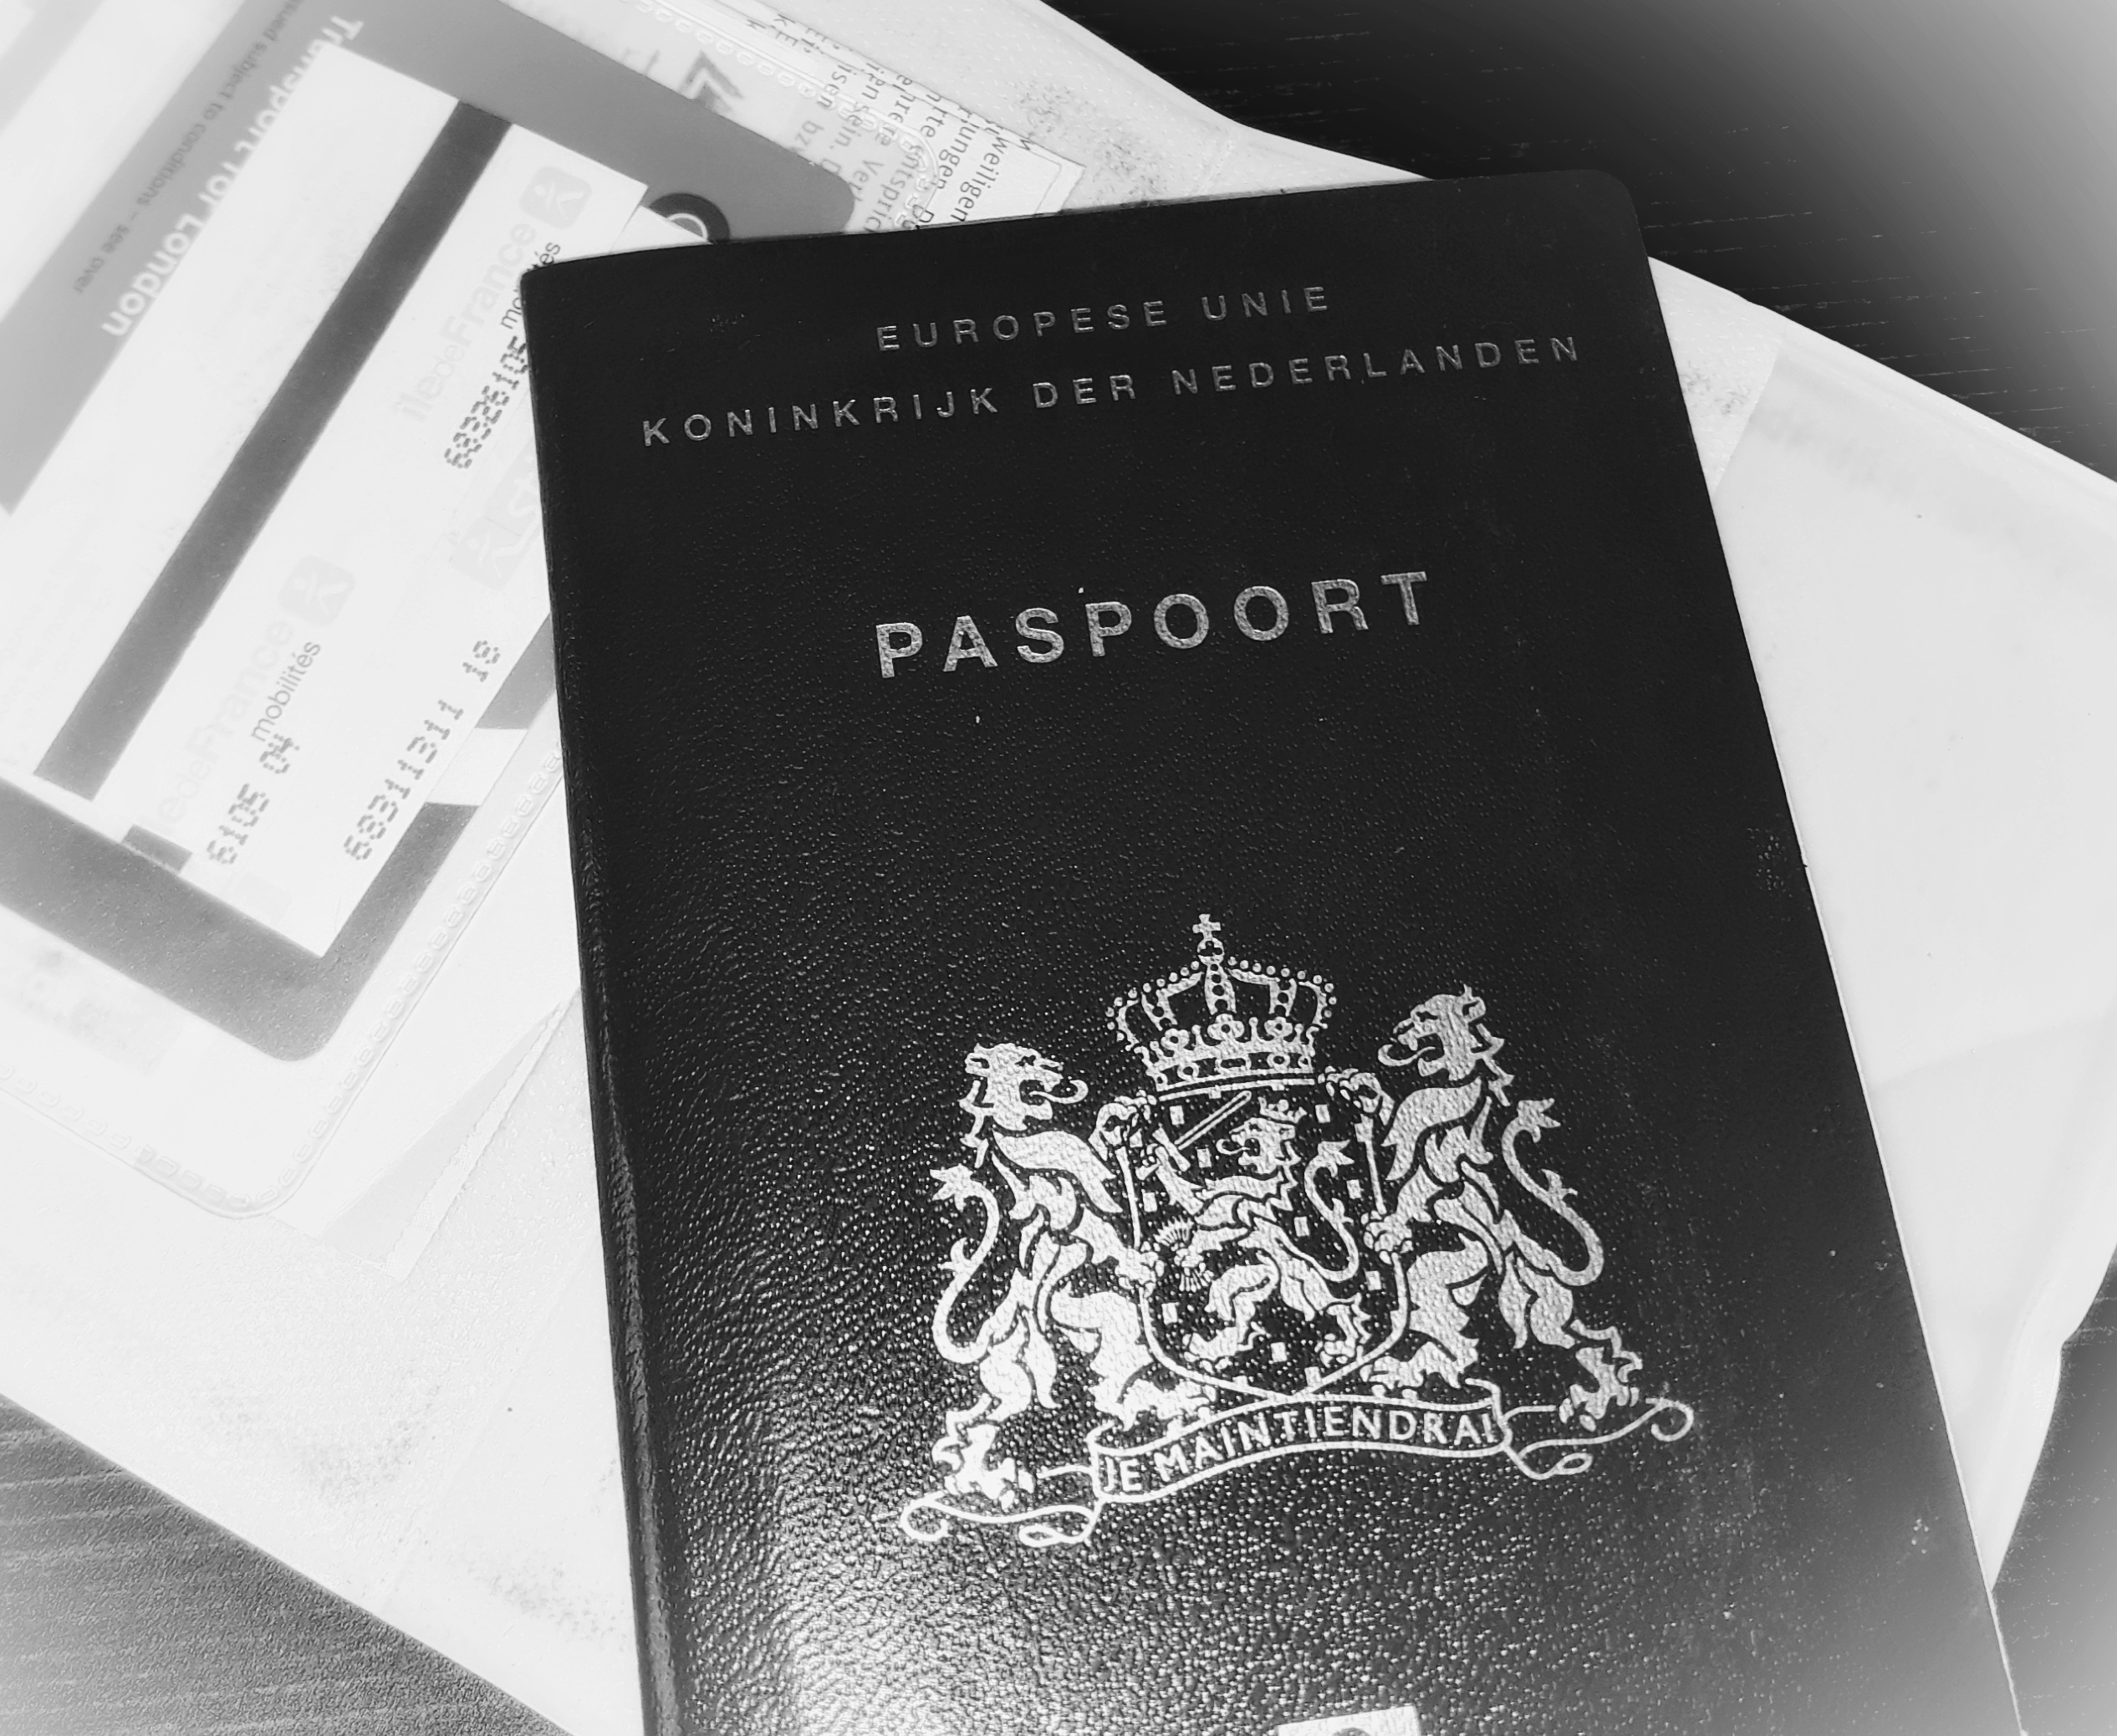 Paspoort kwijt in het buitenland?